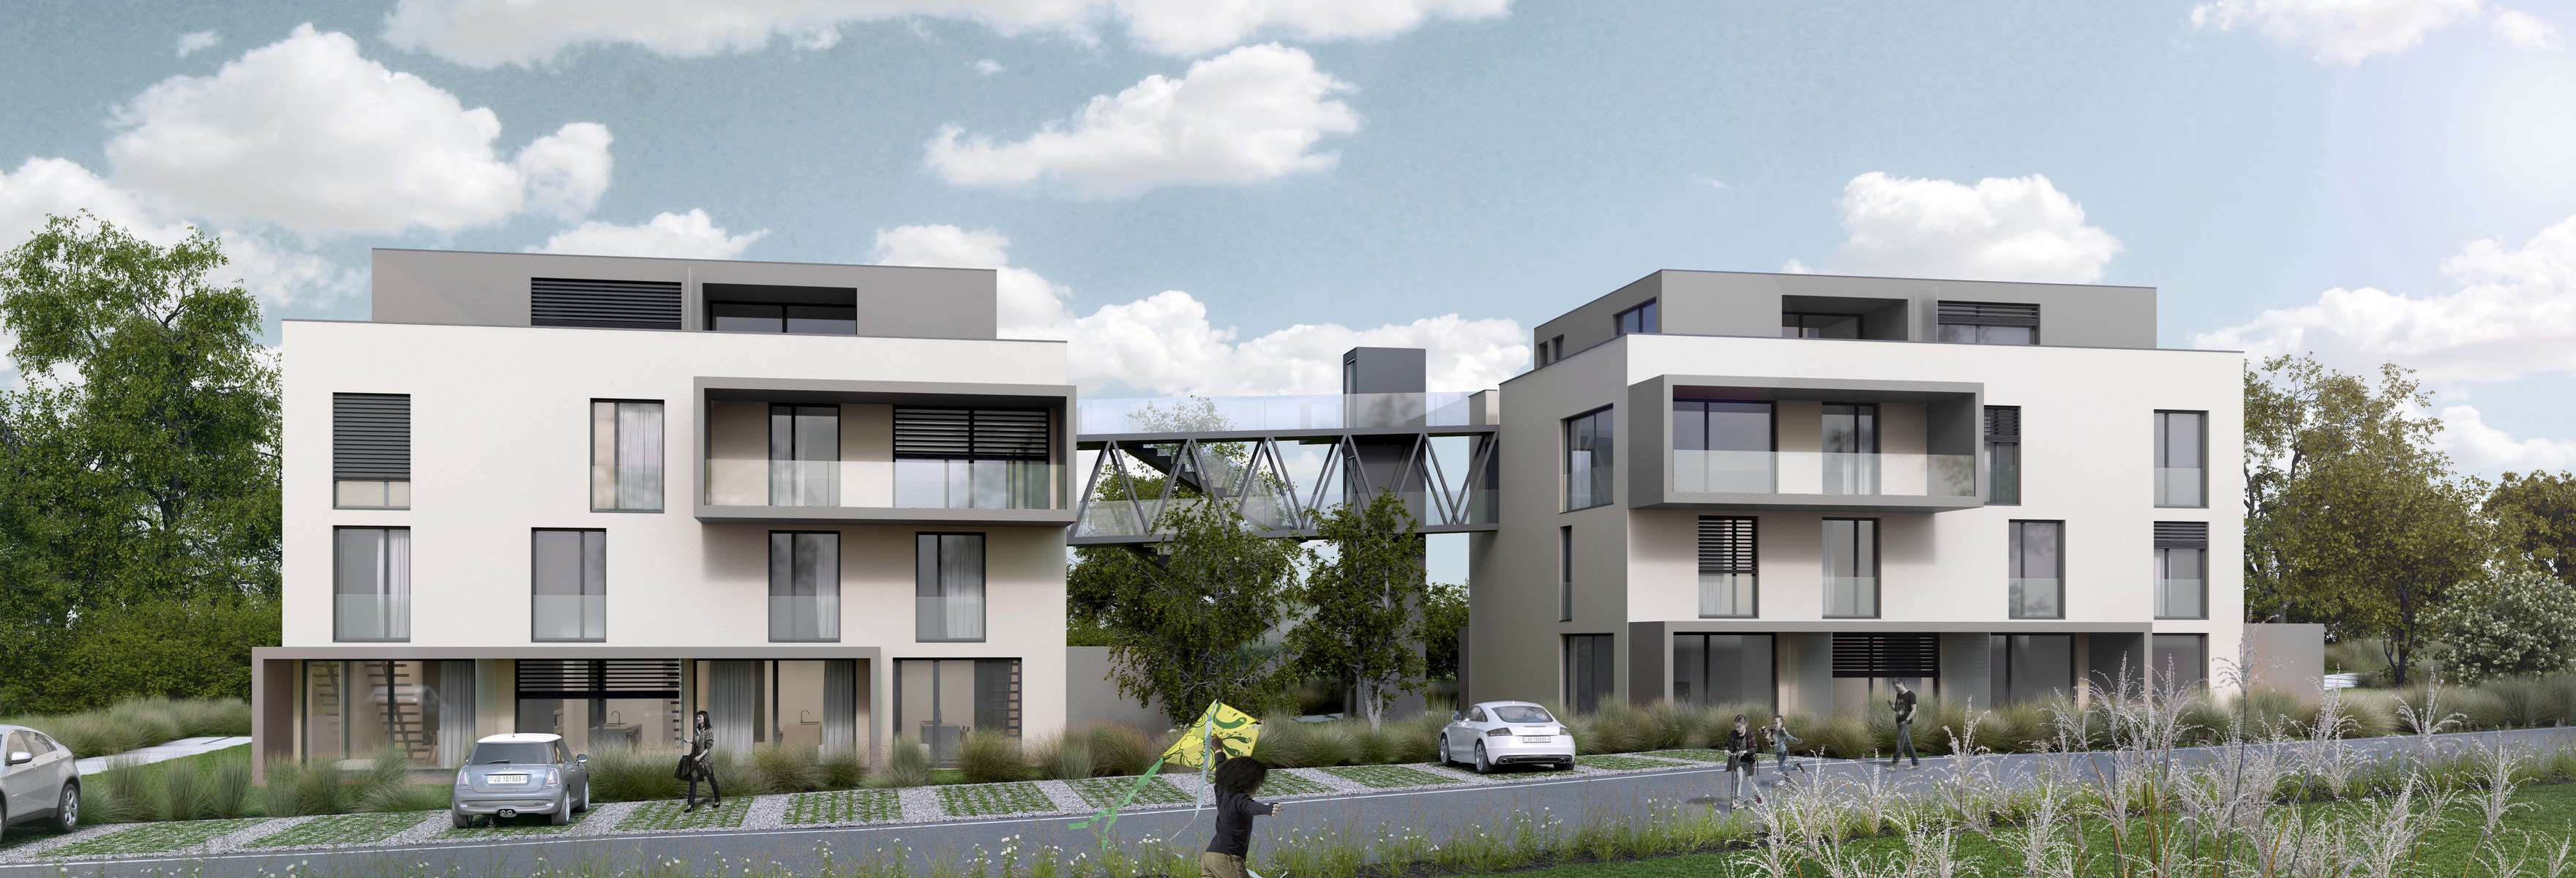 (ris+partenaires 2017)Projet: Construction de 8 unités de logements et garagePorrentruy - SuisseSurface: 1'568 m2Chef de projet:Antoine RisCesar BesadaMandat: Projet et réalisation